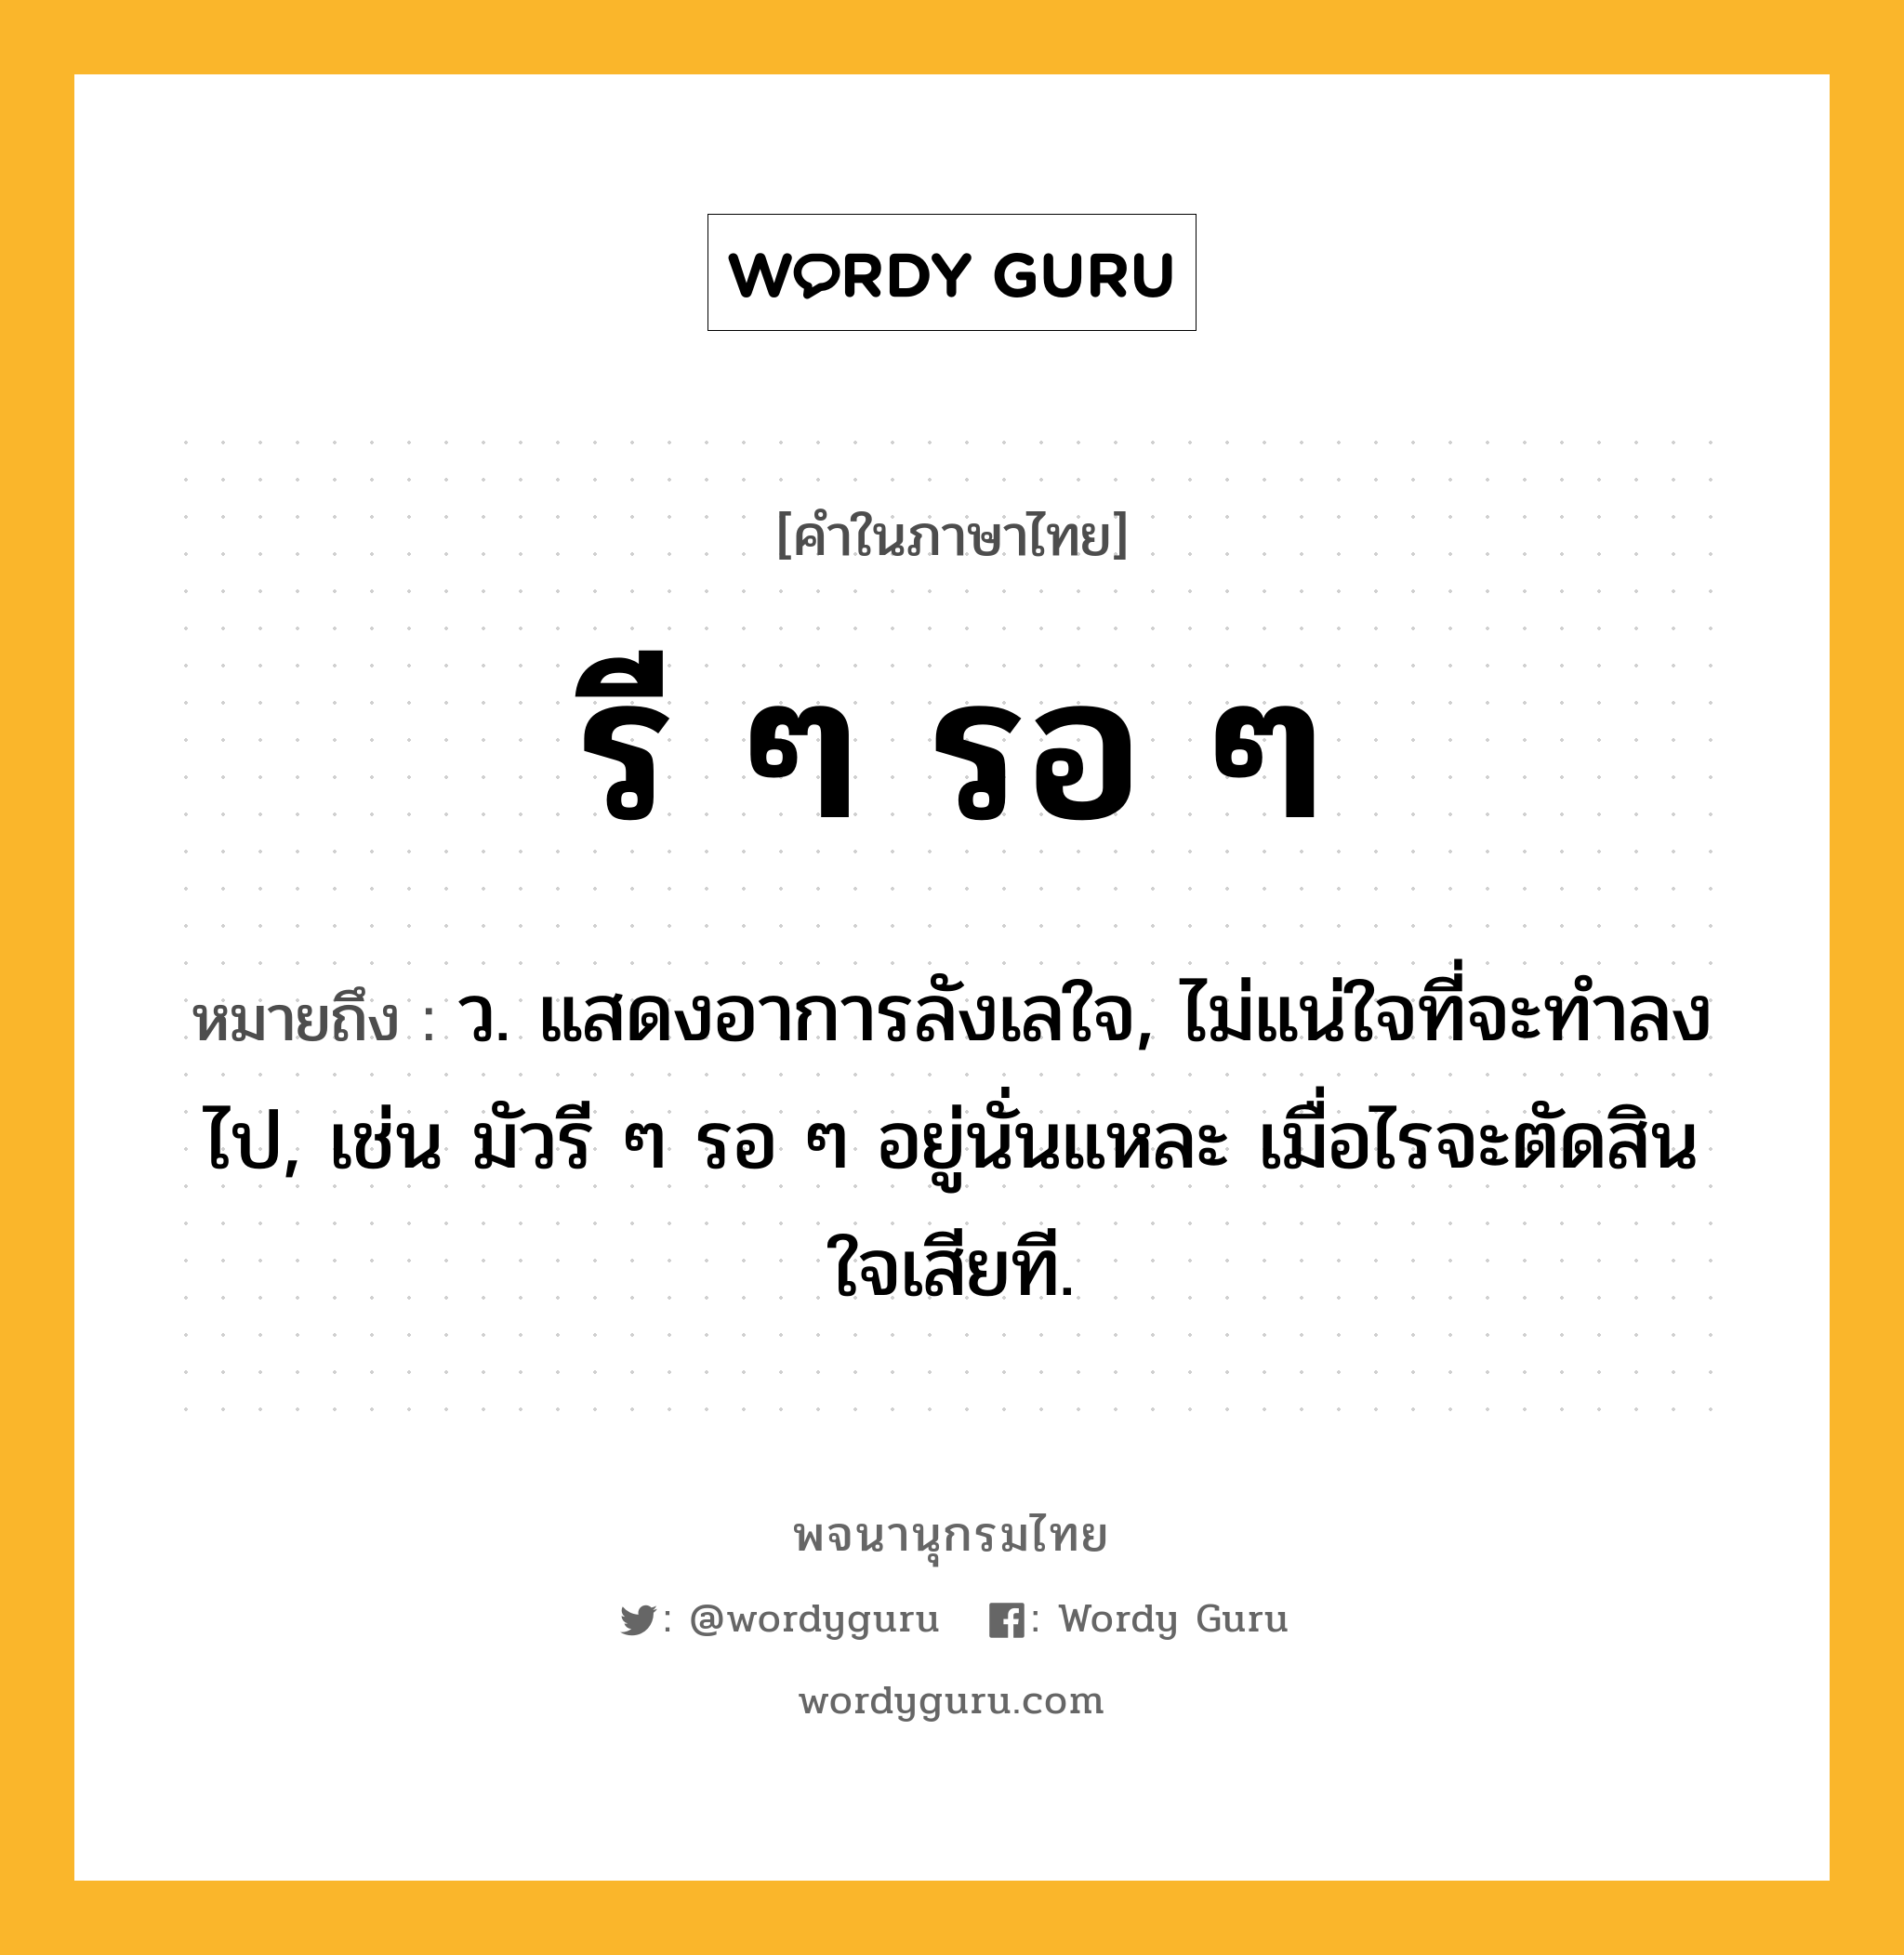 รี ๆ รอ ๆ หมายถึงอะไร?, คำในภาษาไทย รี ๆ รอ ๆ หมายถึง ว. แสดงอาการลังเลใจ, ไม่แน่ใจที่จะทําลงไป, เช่น มัวรี ๆ รอ ๆ อยู่นั่นแหละ เมื่อไรจะตัดสินใจเสียที.